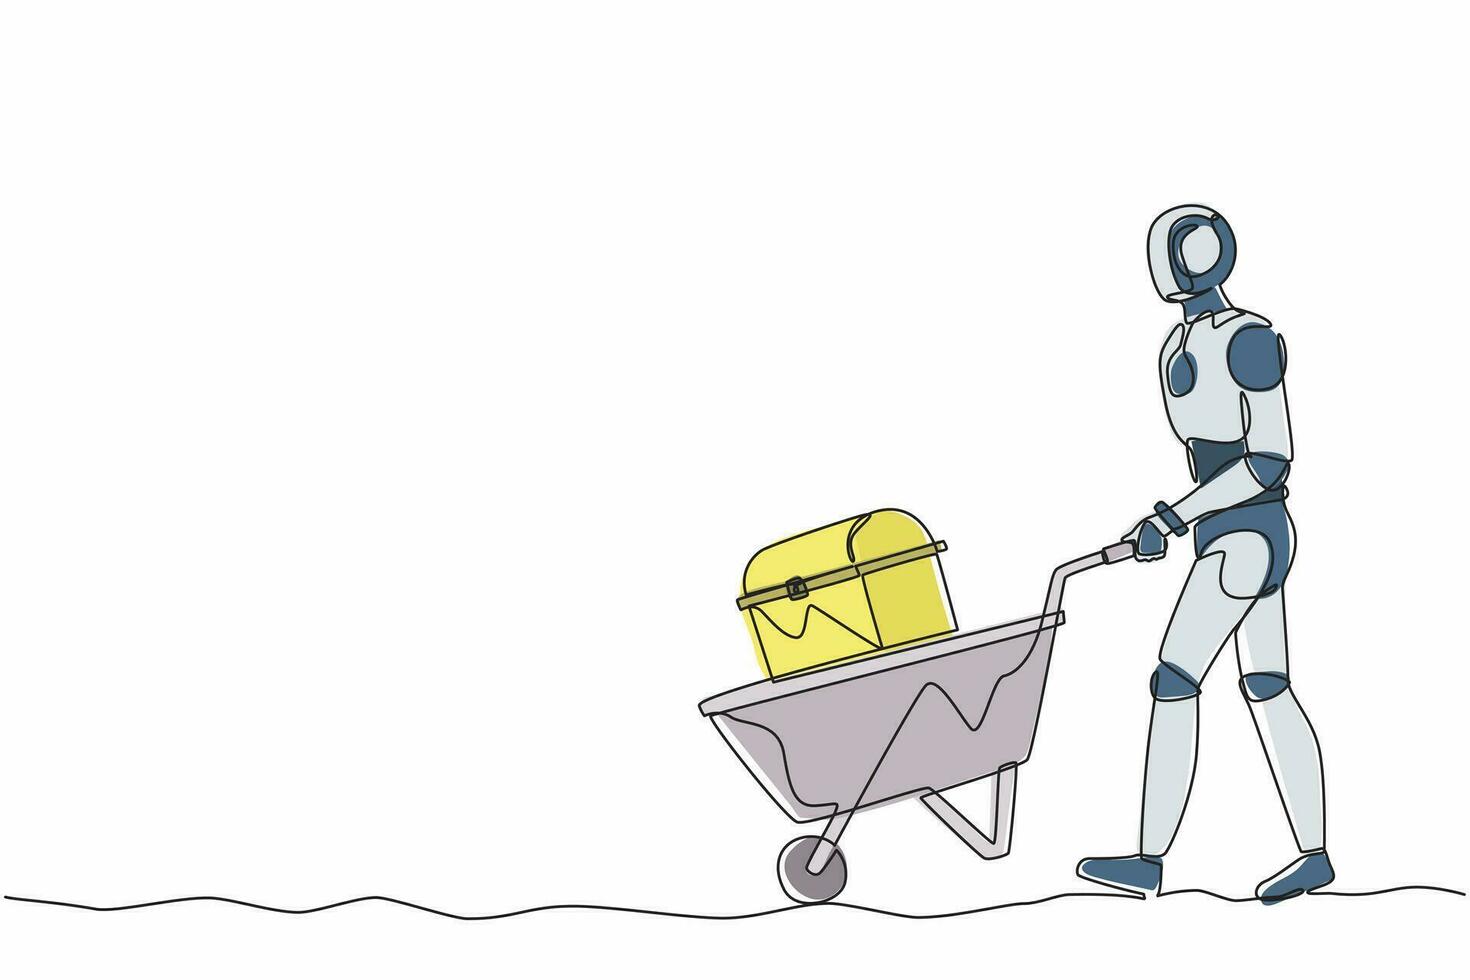 enkele één lijntekening robot lopende en duwende trolley met borstschat. toekomstige technologische ontwikkeling. kunstmatige intelligentie en machine learning. doorlopende lijn ontwerp vectorillustratie vector